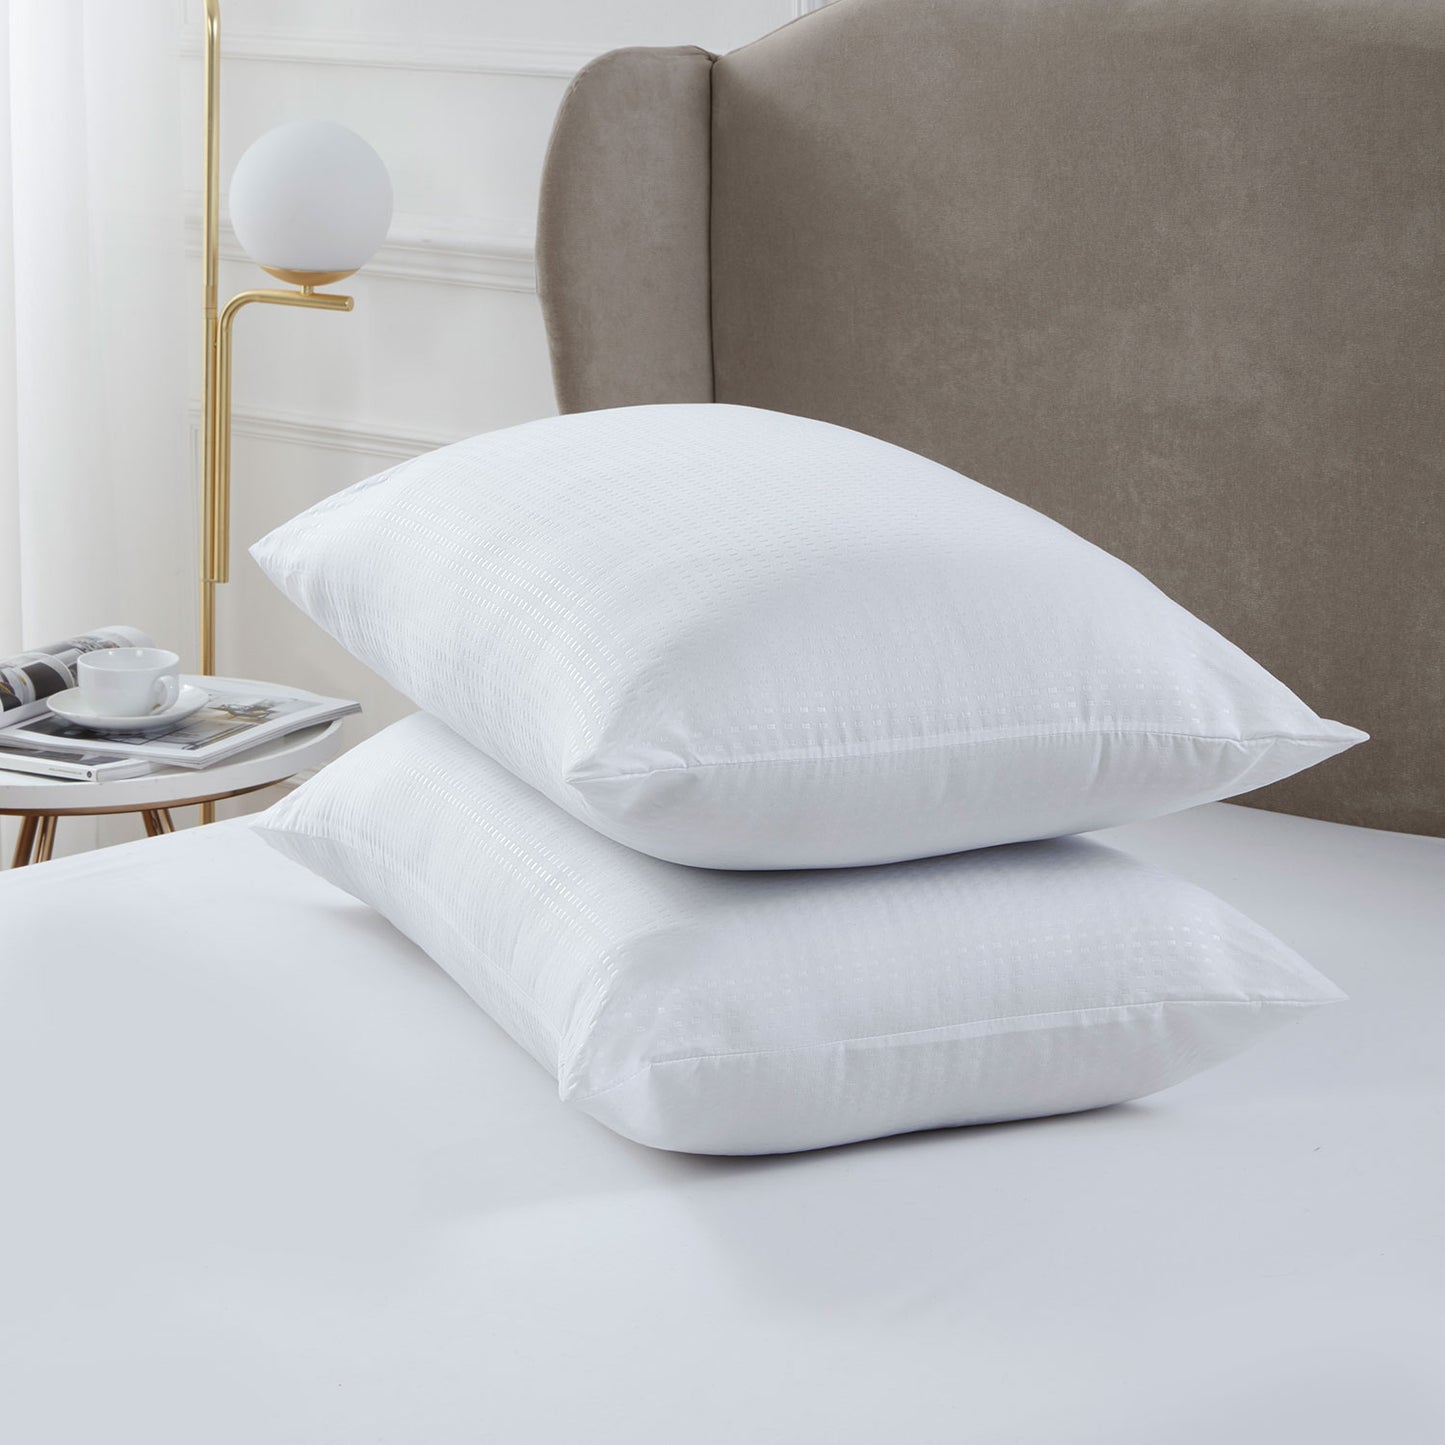 Luxe Side Sleeper Pillow Pair - Medium Support